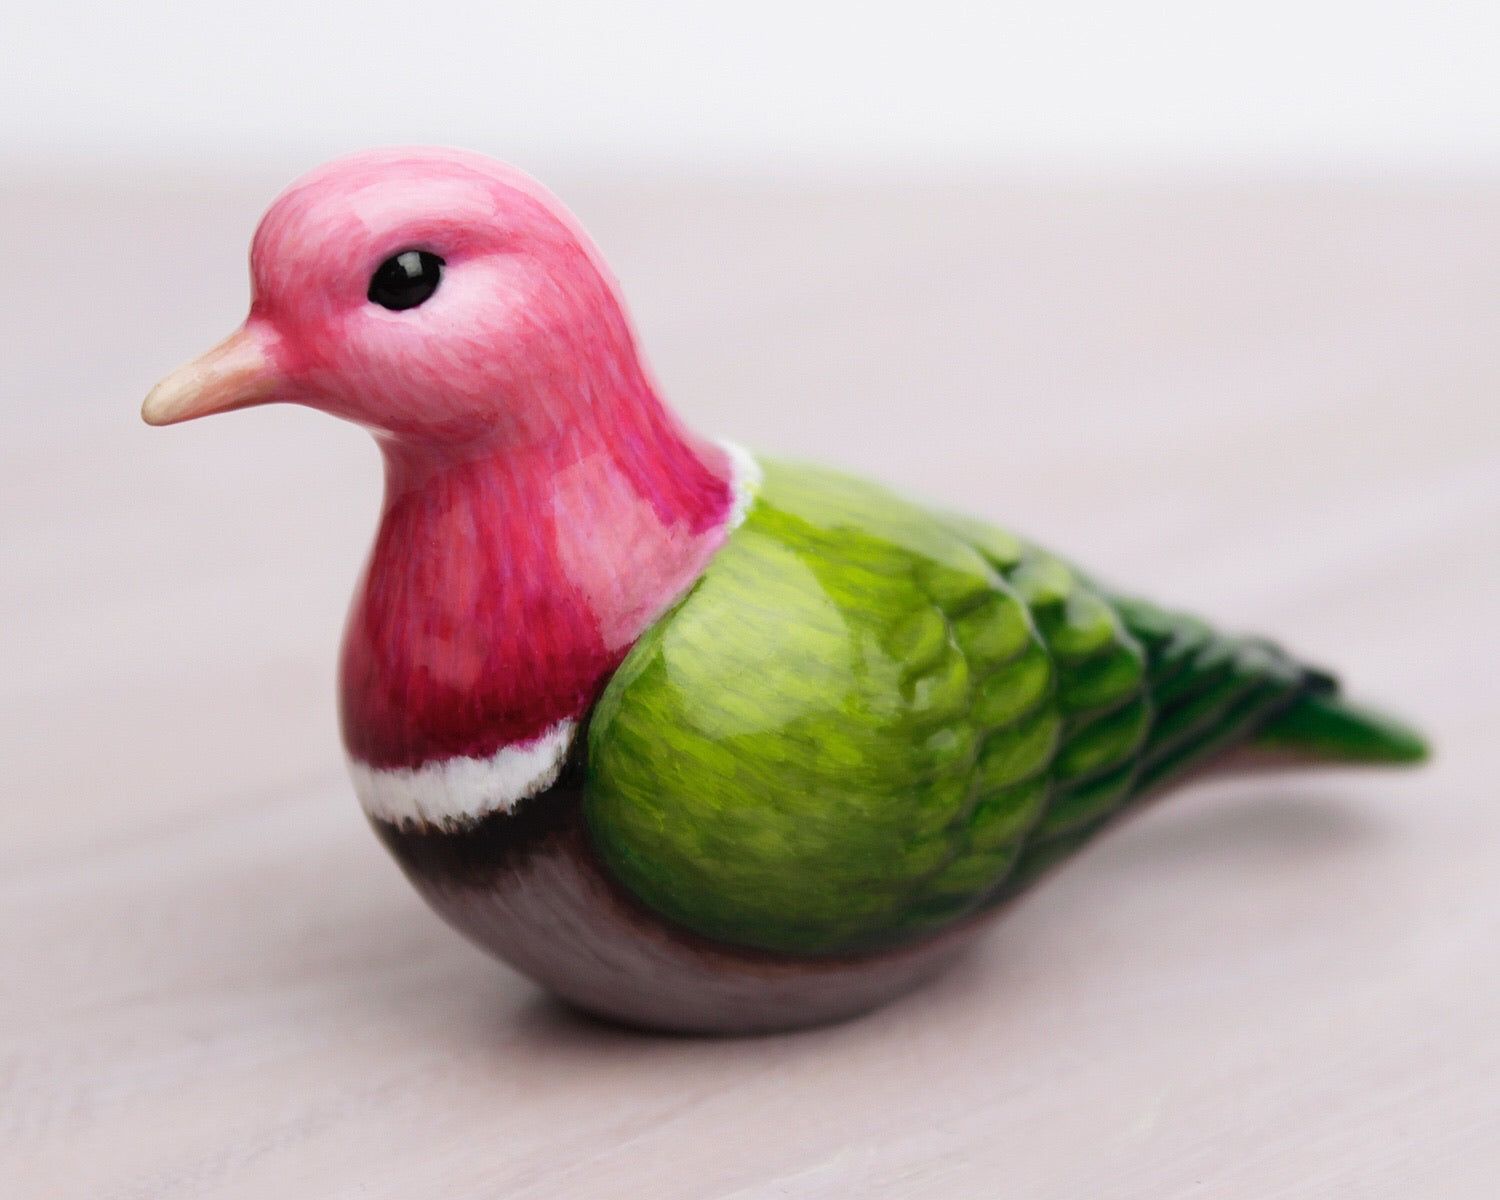 pink-headed fruit-dove